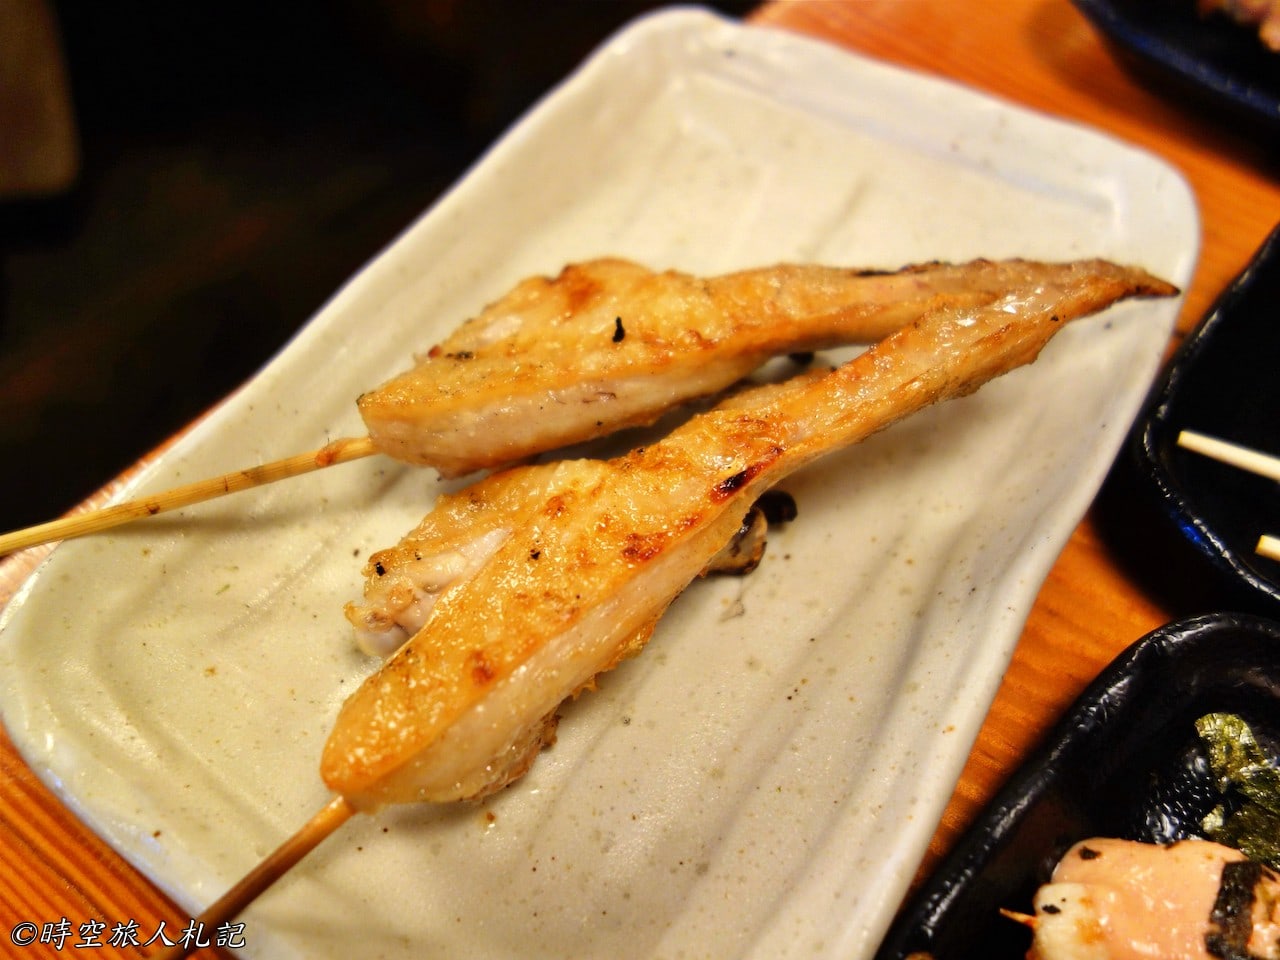 神戶美食,kobe-food,日本神戶美食 40